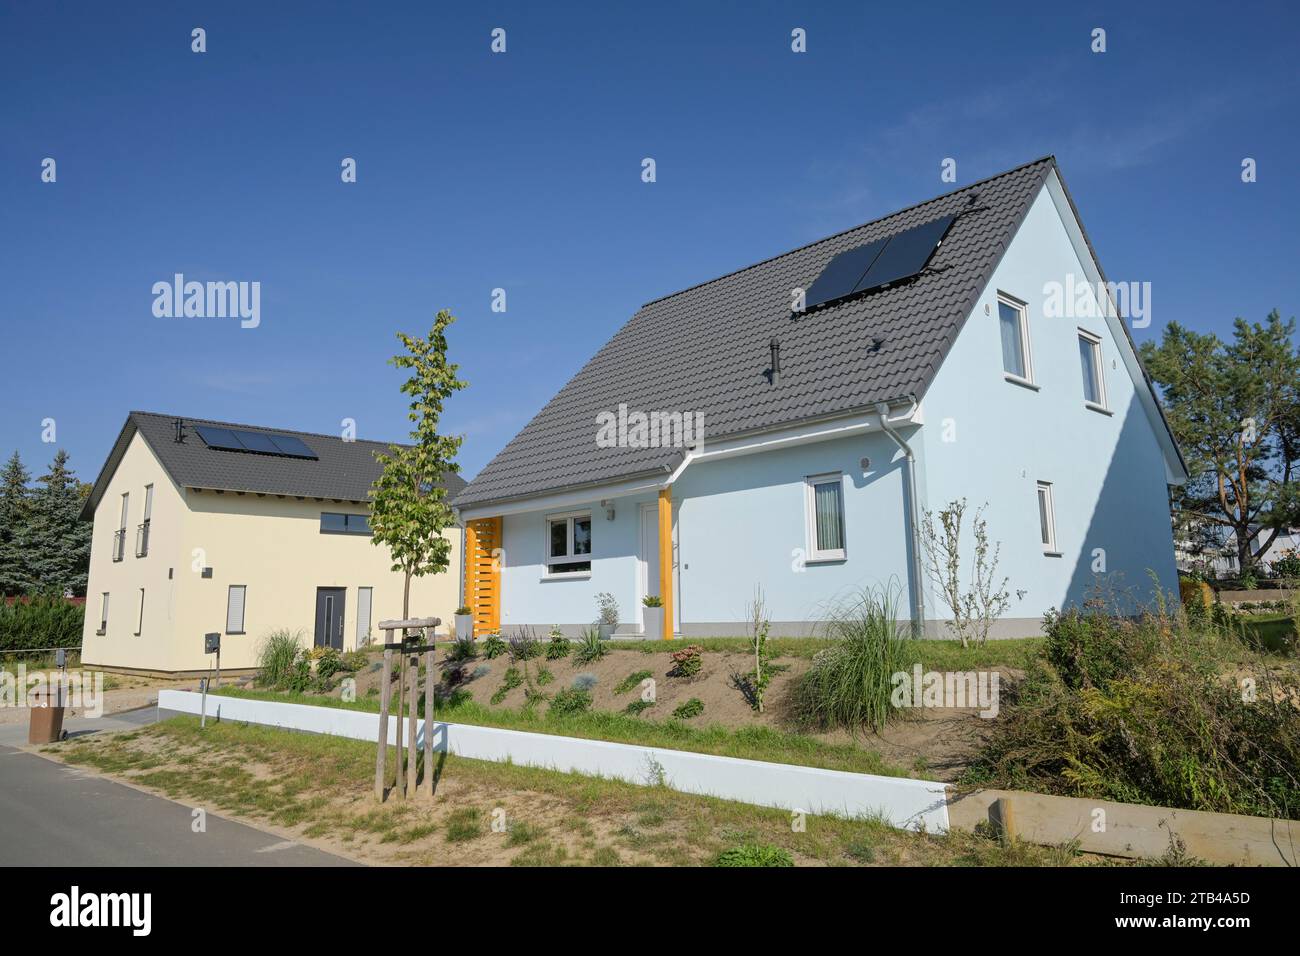 Detached house, new development area Am Rueggen Ost, Melchow am Ruegen, Brandenburg, Germany Stock Photo